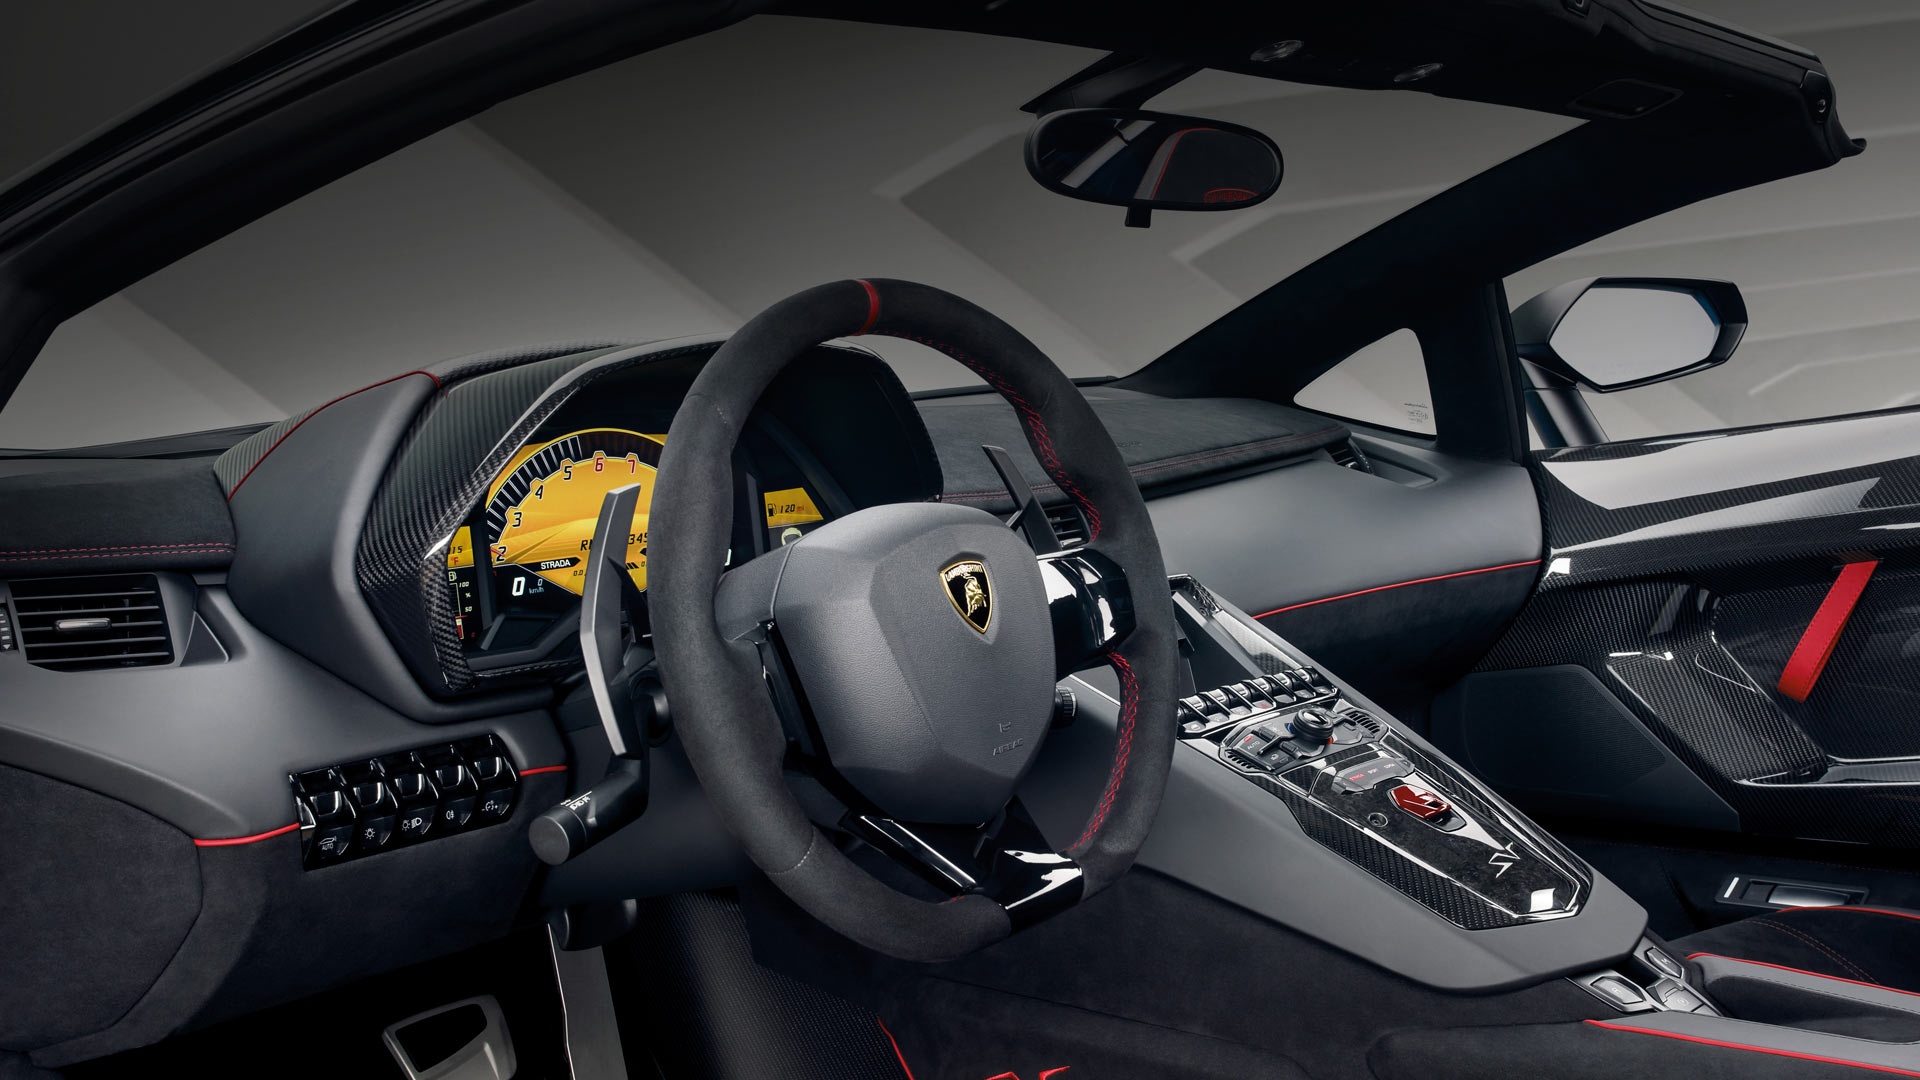 New 2016 Lamborghini Aventador Lp 750 4 Superveloce Roadster